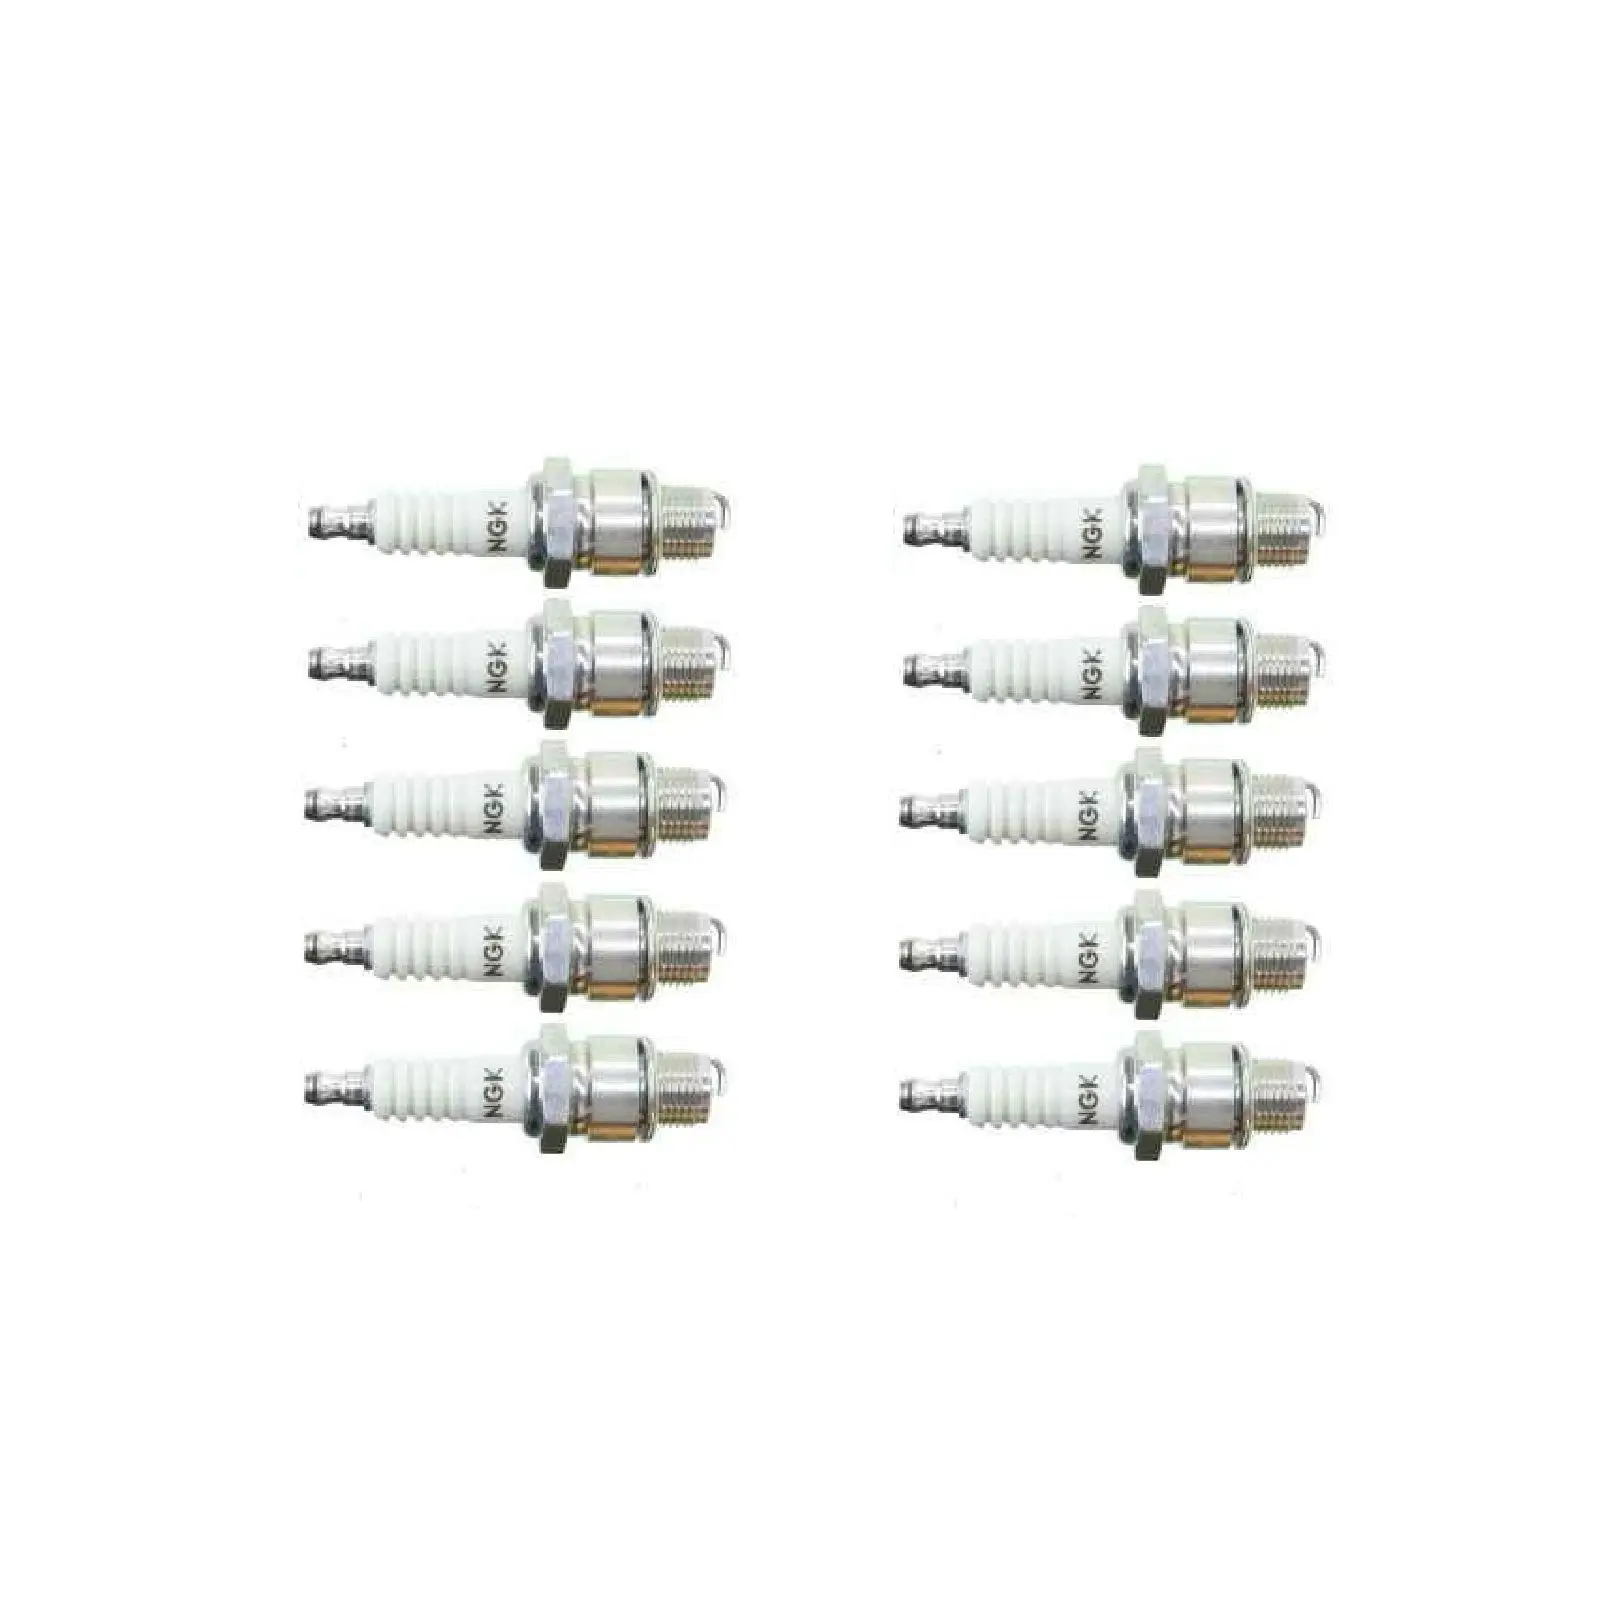 10PCS NGK Spark Plug for TOHATSU 9.9 hp 12hp 15hp 18hp 25hp 30hp 40hp M9.9B M9.9C M9.9D M12C M15B M15C M15D M18C M18D 2 Stroke